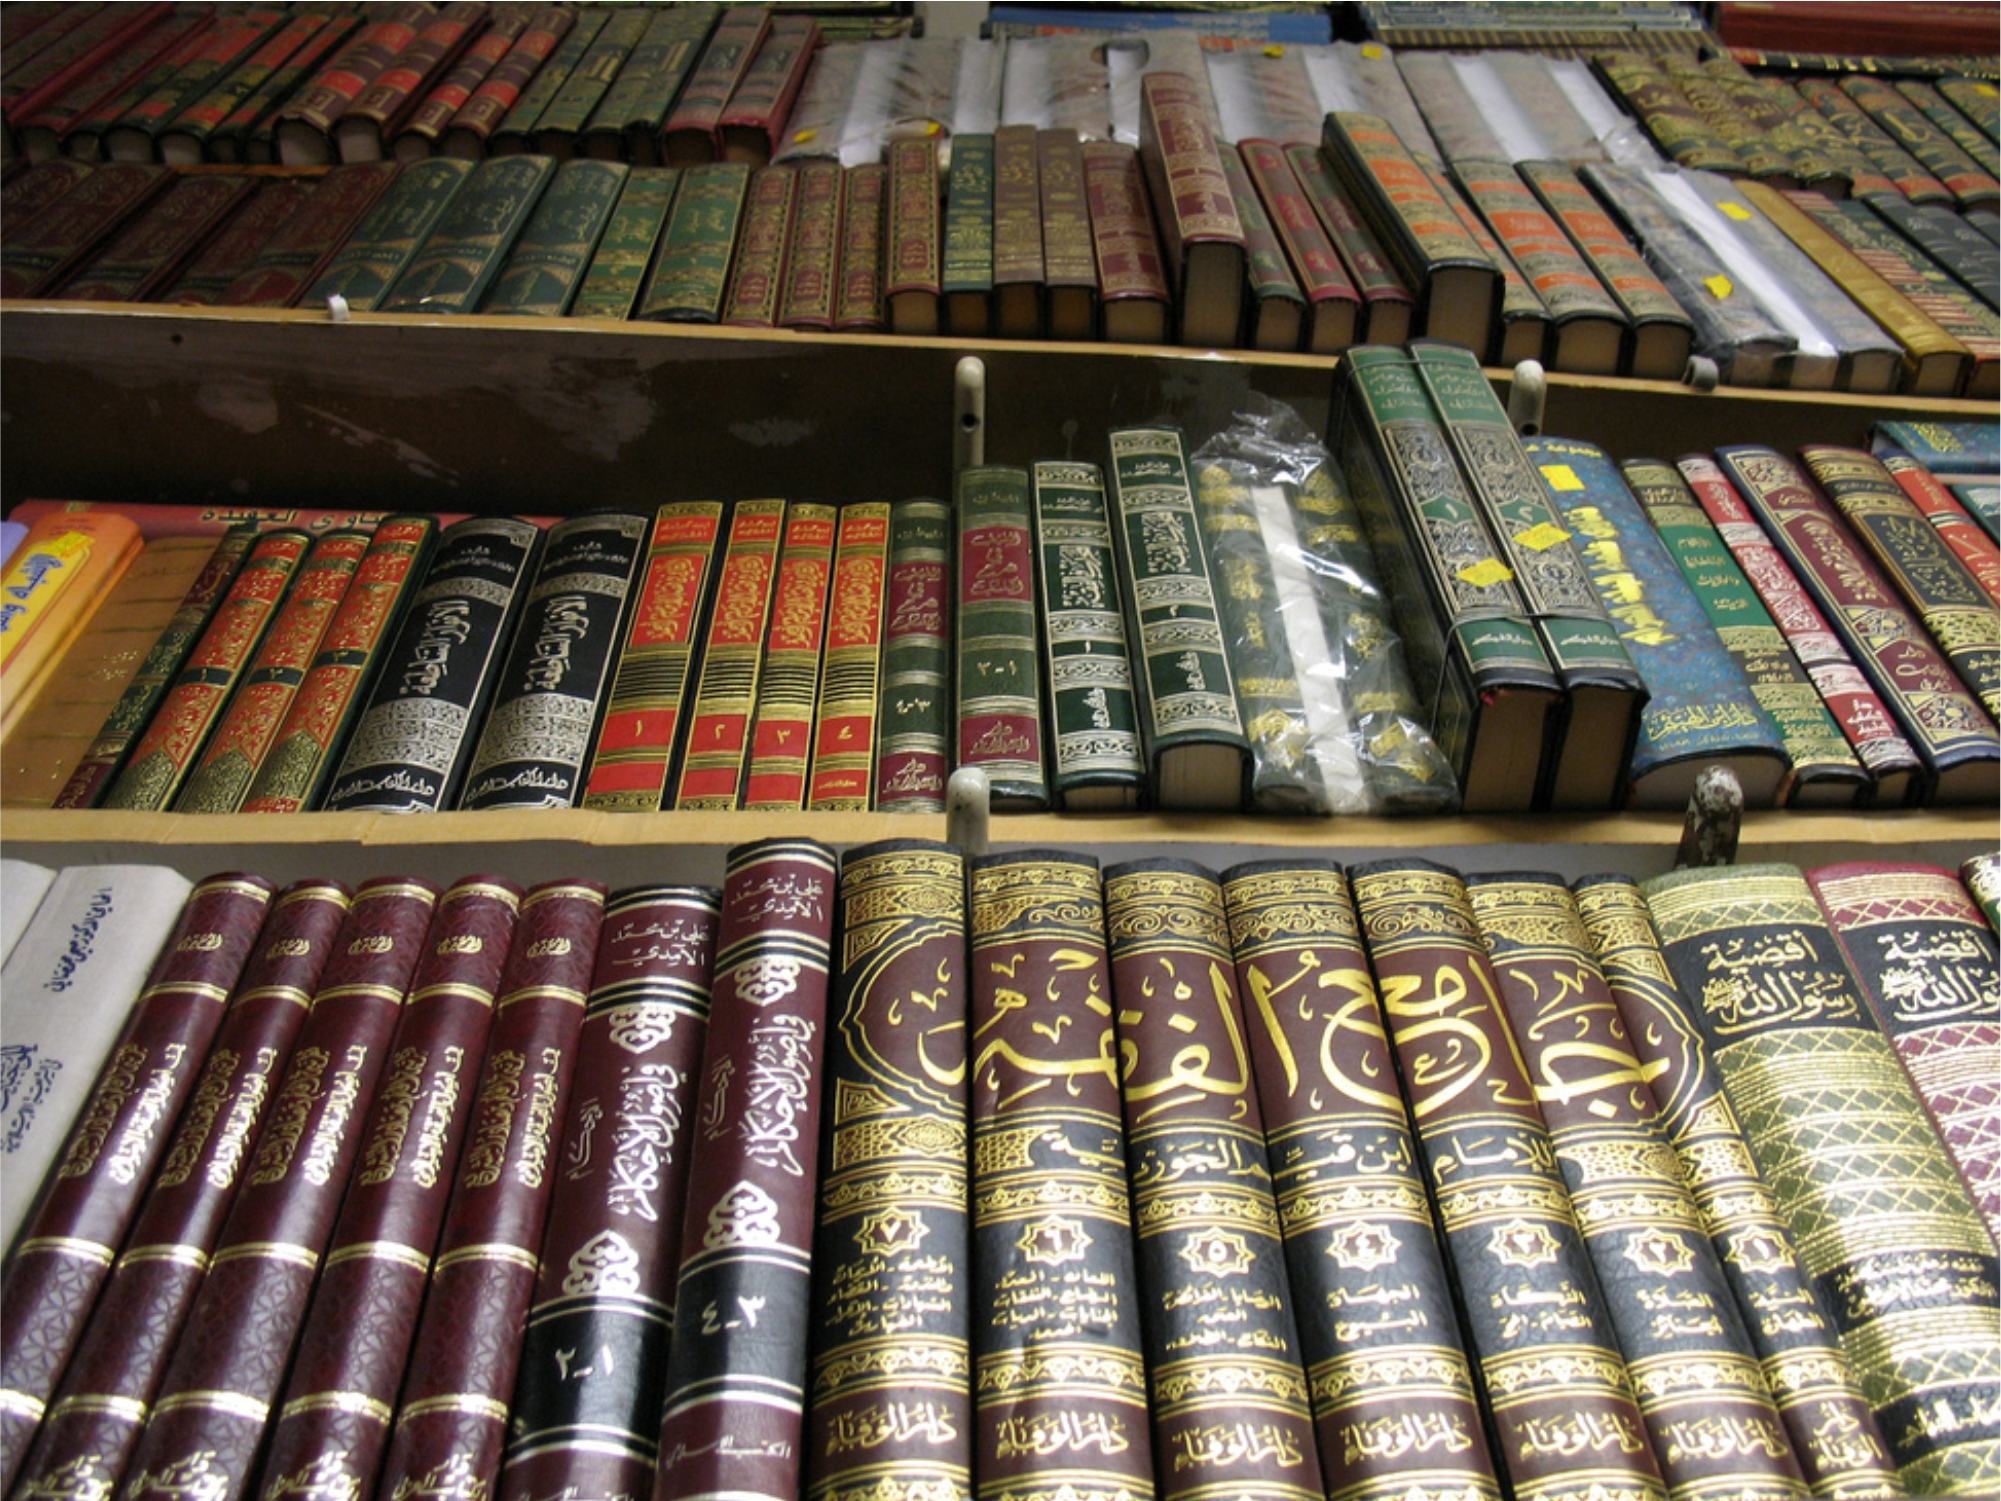 arabic books